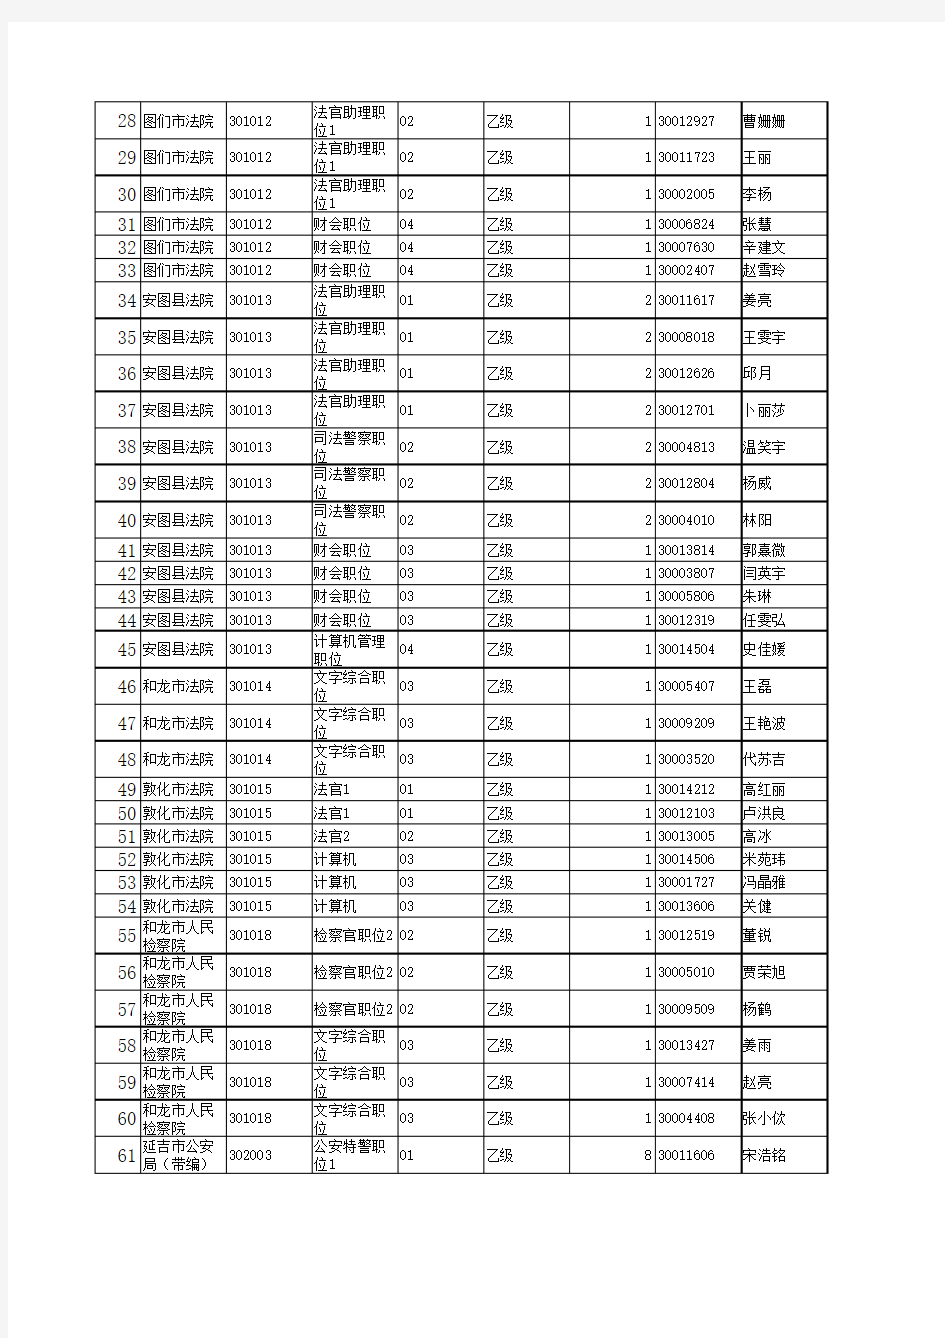 2012年延边州各级机关考试录用公务员面试时间安排表(附件)